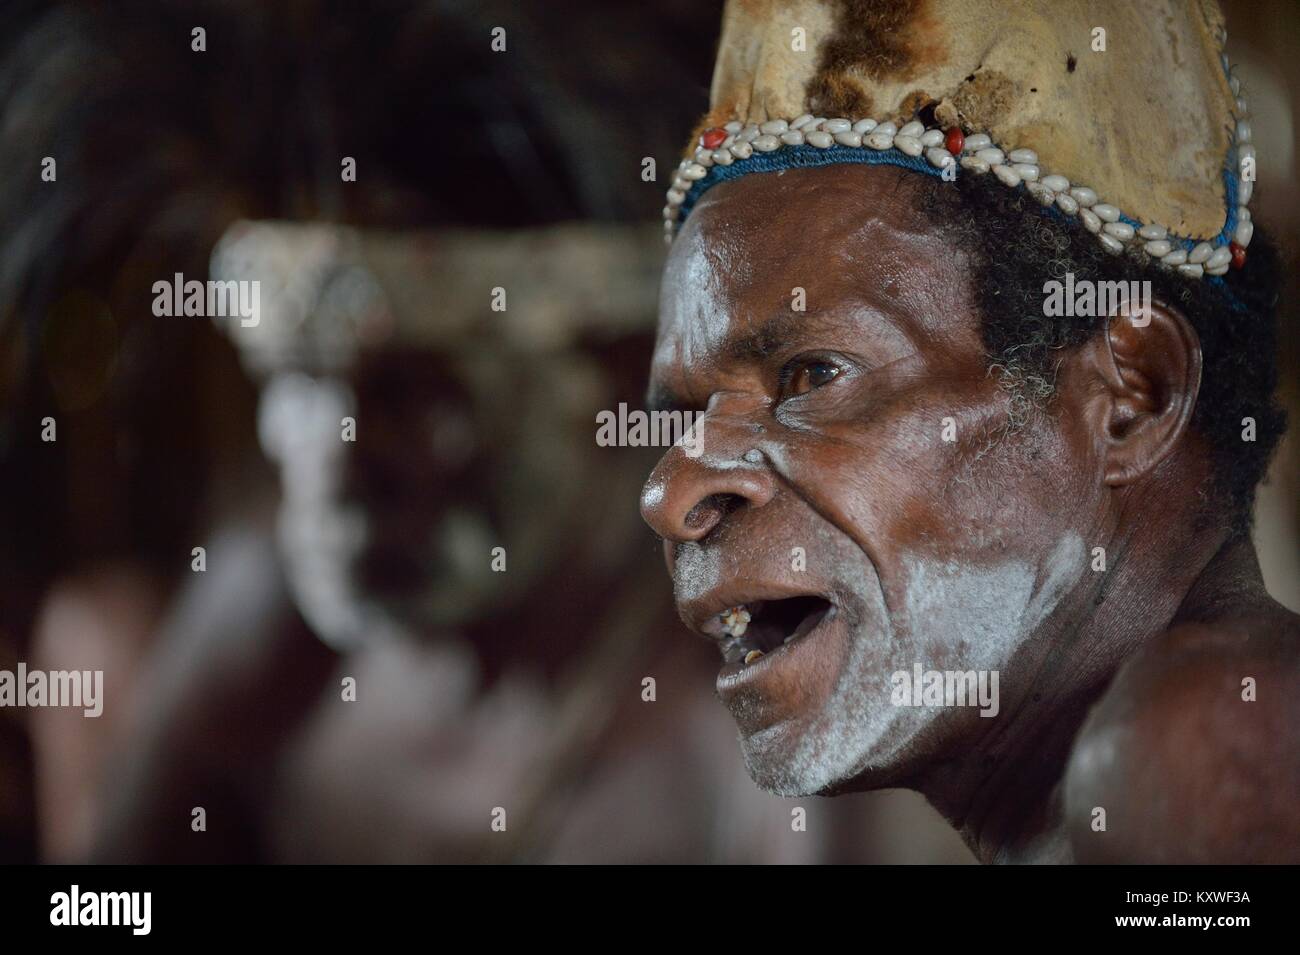 Portrait d'un homme de la tribu de peuple Asmat dans le rituel du maquillage. Nouvelle Guinée. 23 mai, 2016 Banque D'Images